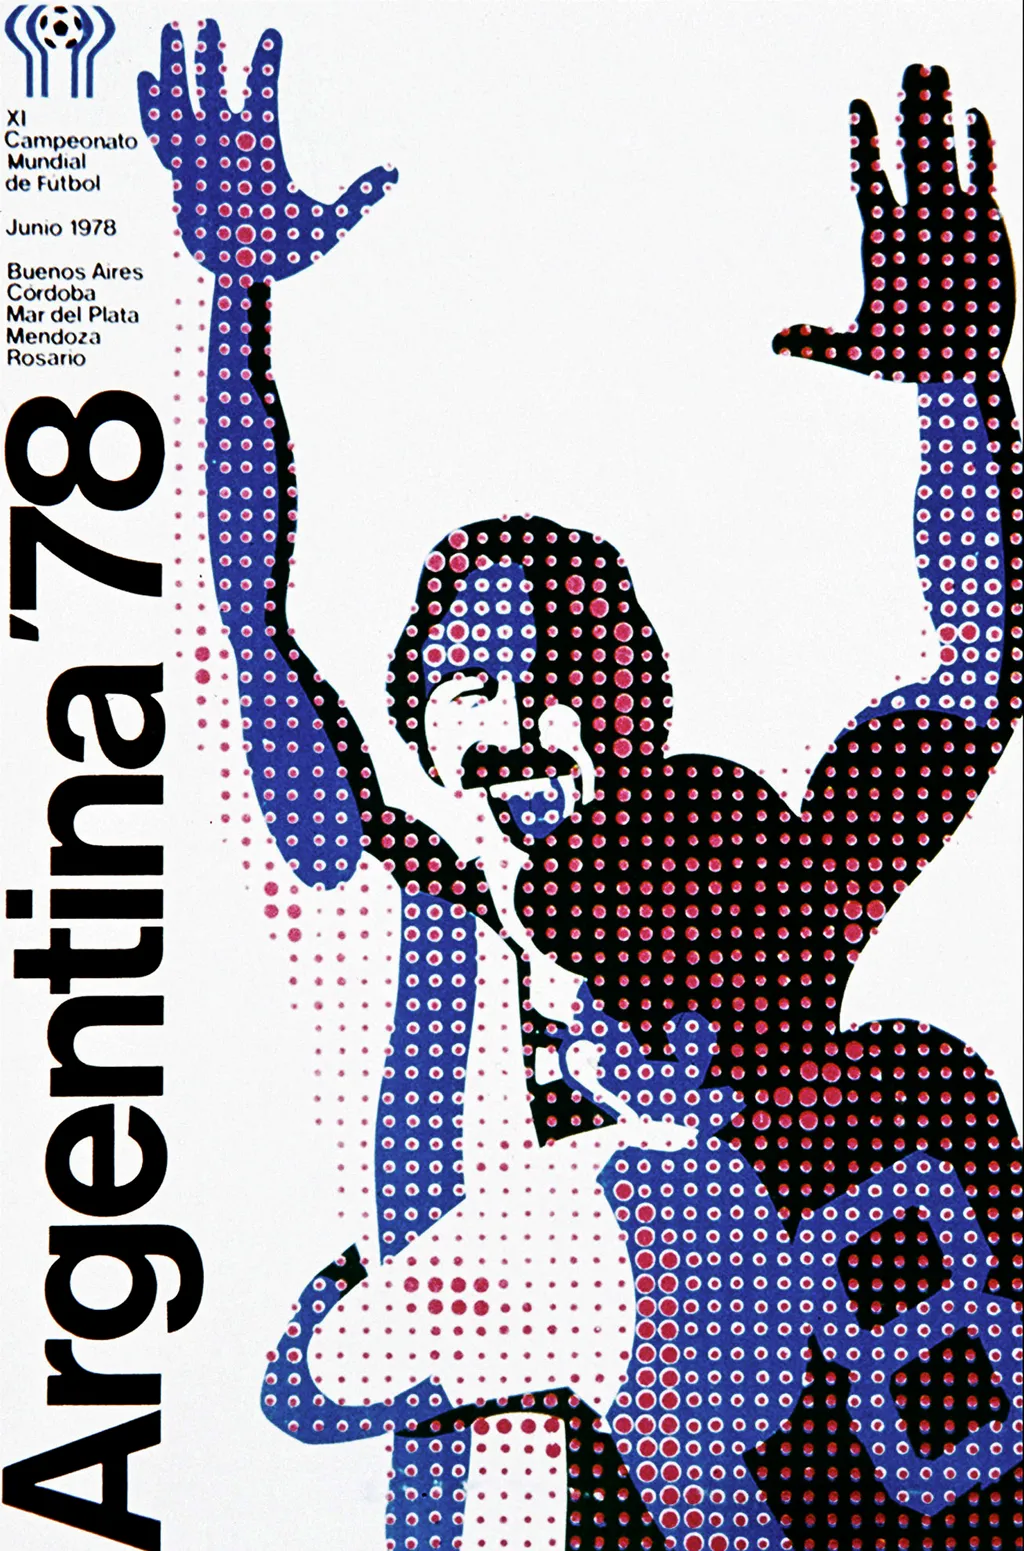 Labdarúgó-világbajnokság, labdarúgóvébé, futballvébé, labdarúgás, hivatalos plakát, poszter, 1978, Argentína 